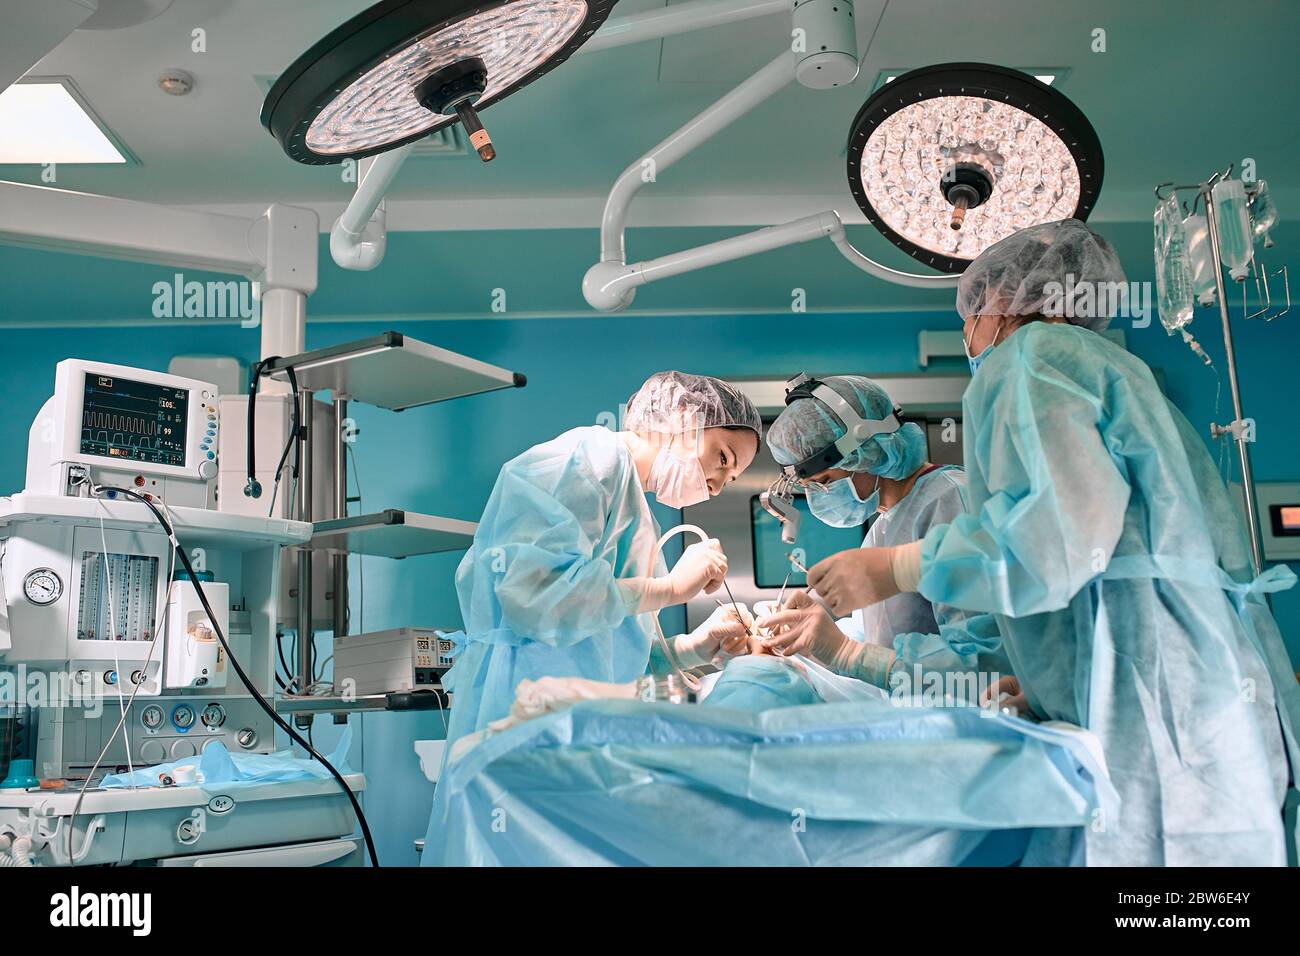 Cirugía moderna en un hospital tecnológicamente avanzado. Sala luminosa de cuidados intensivos. Los médicos y asistentes que trabajan en el quirófano salvan vidas. Foto de stock